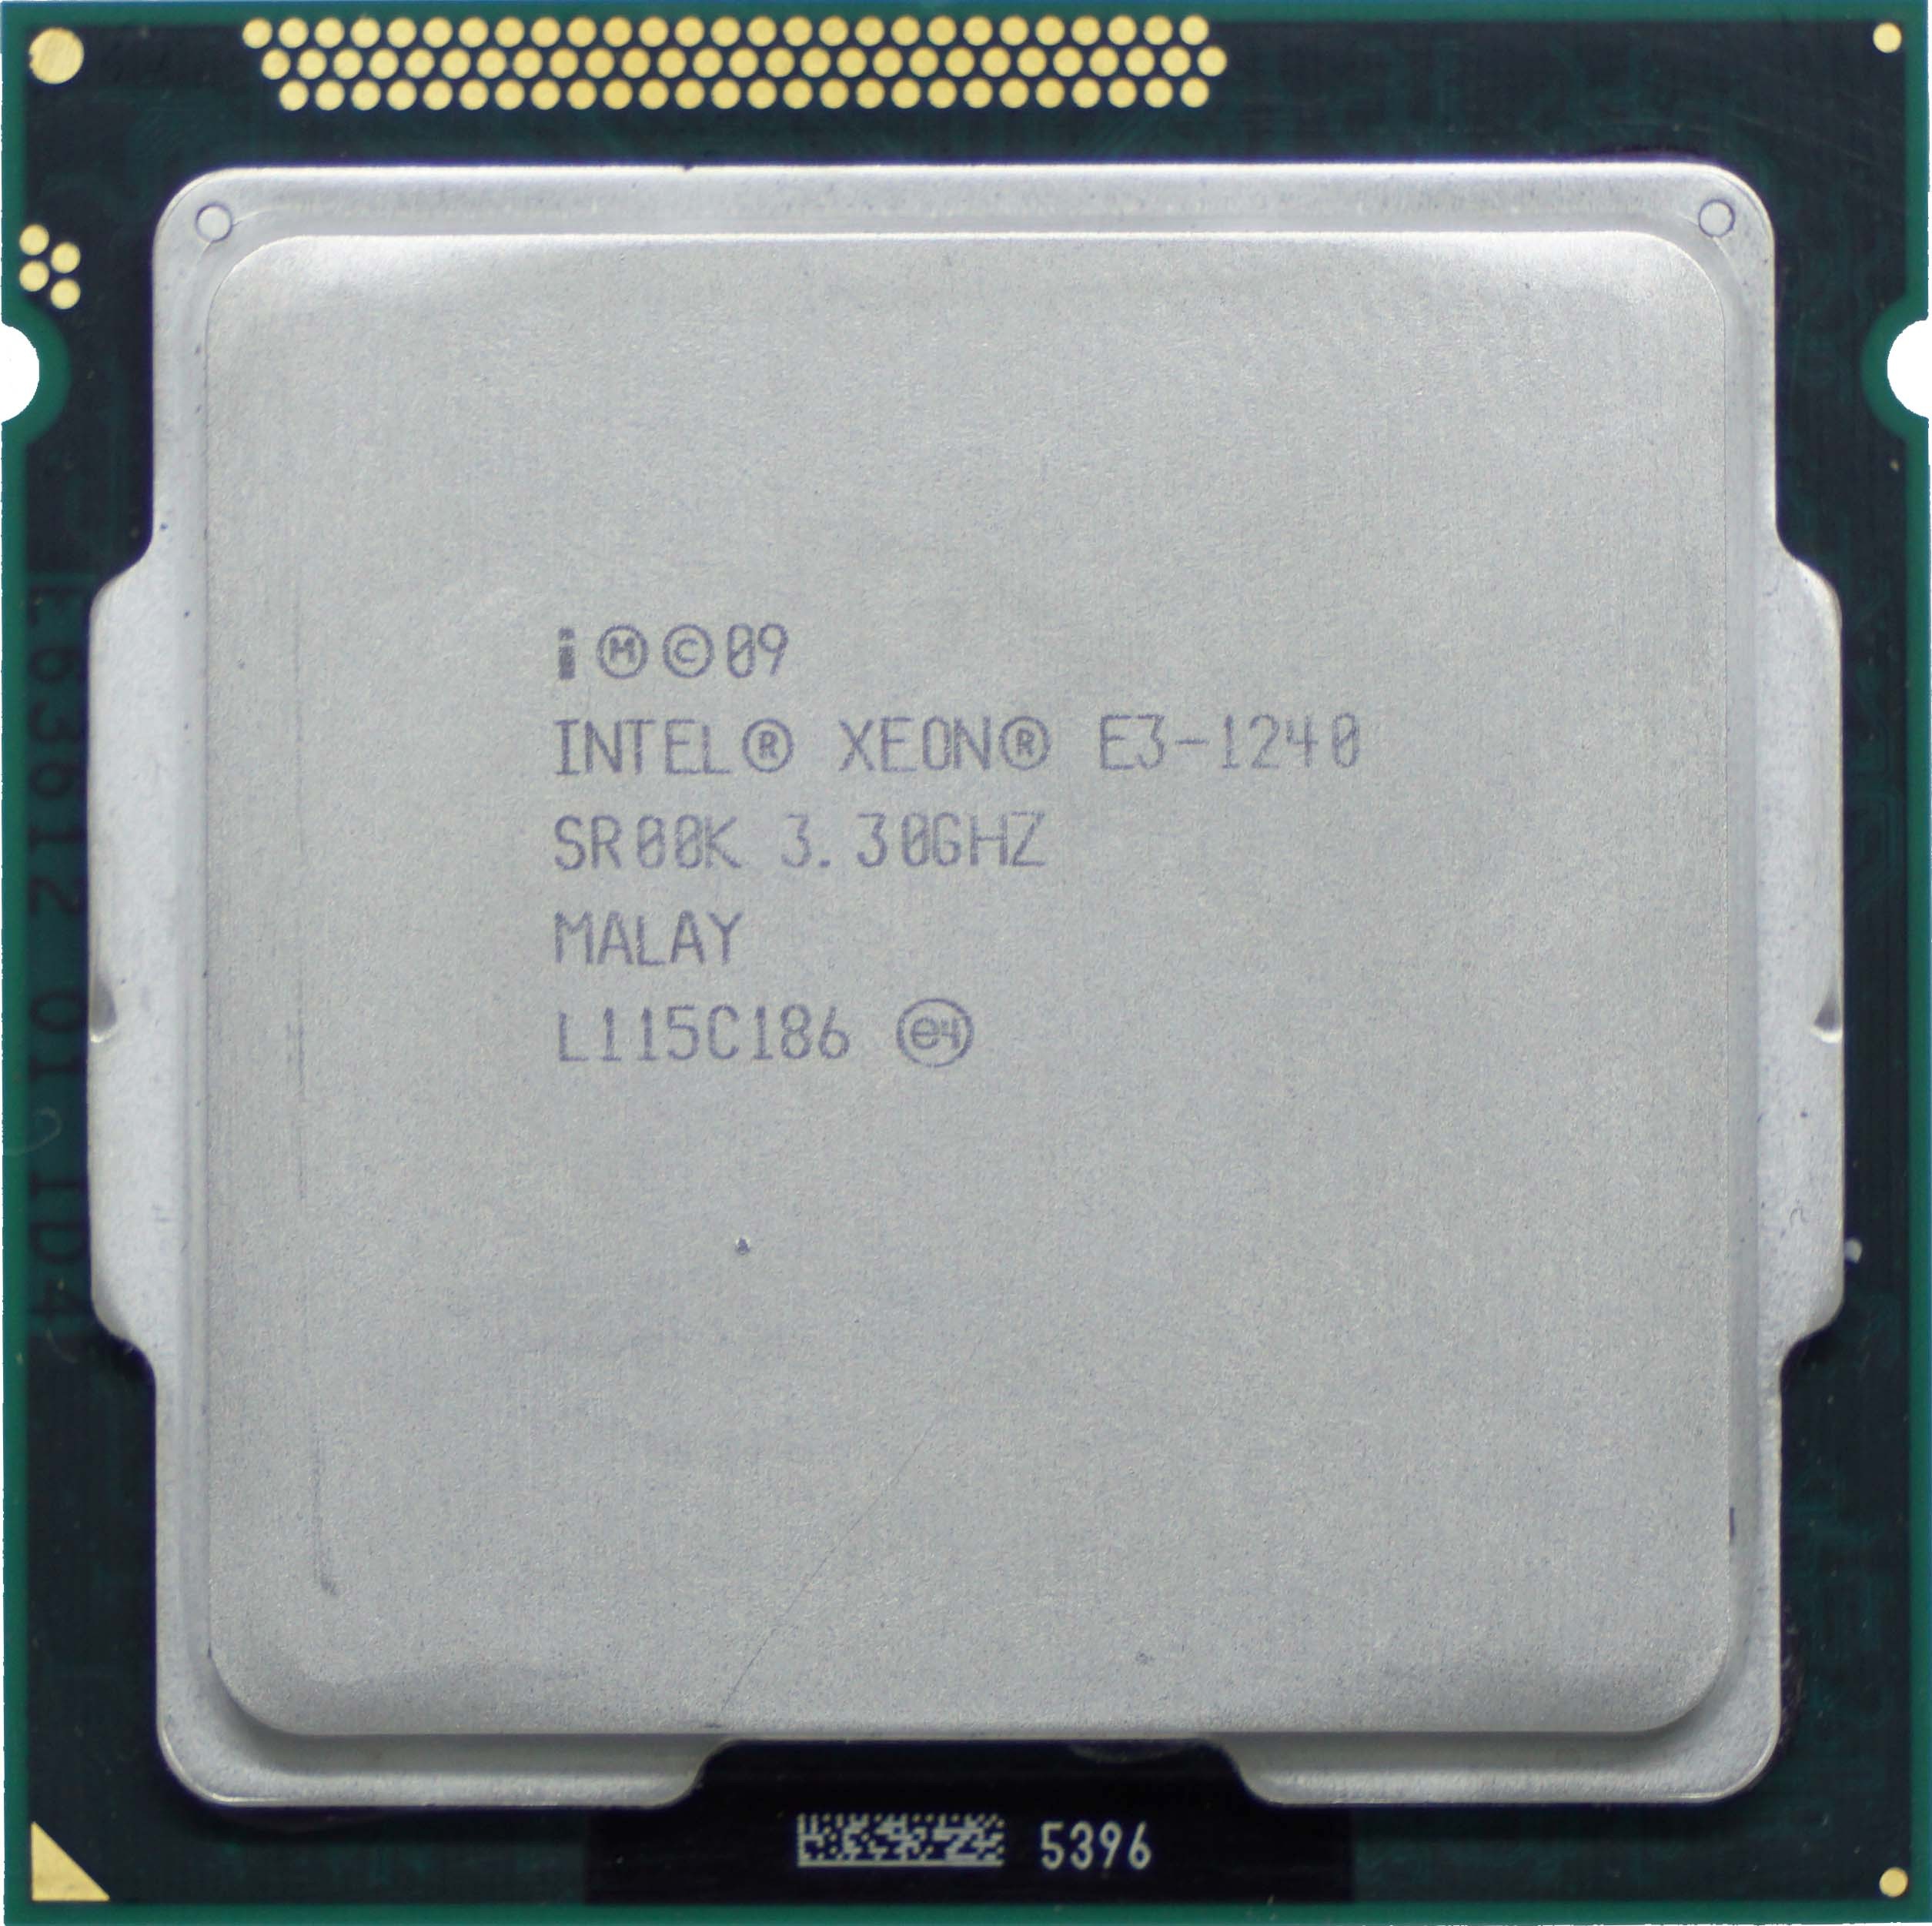 Intel Xeon E3-1240 V1 (SR00K) 3.30Ghz Quad (4) Core LGA1155 80W CPU